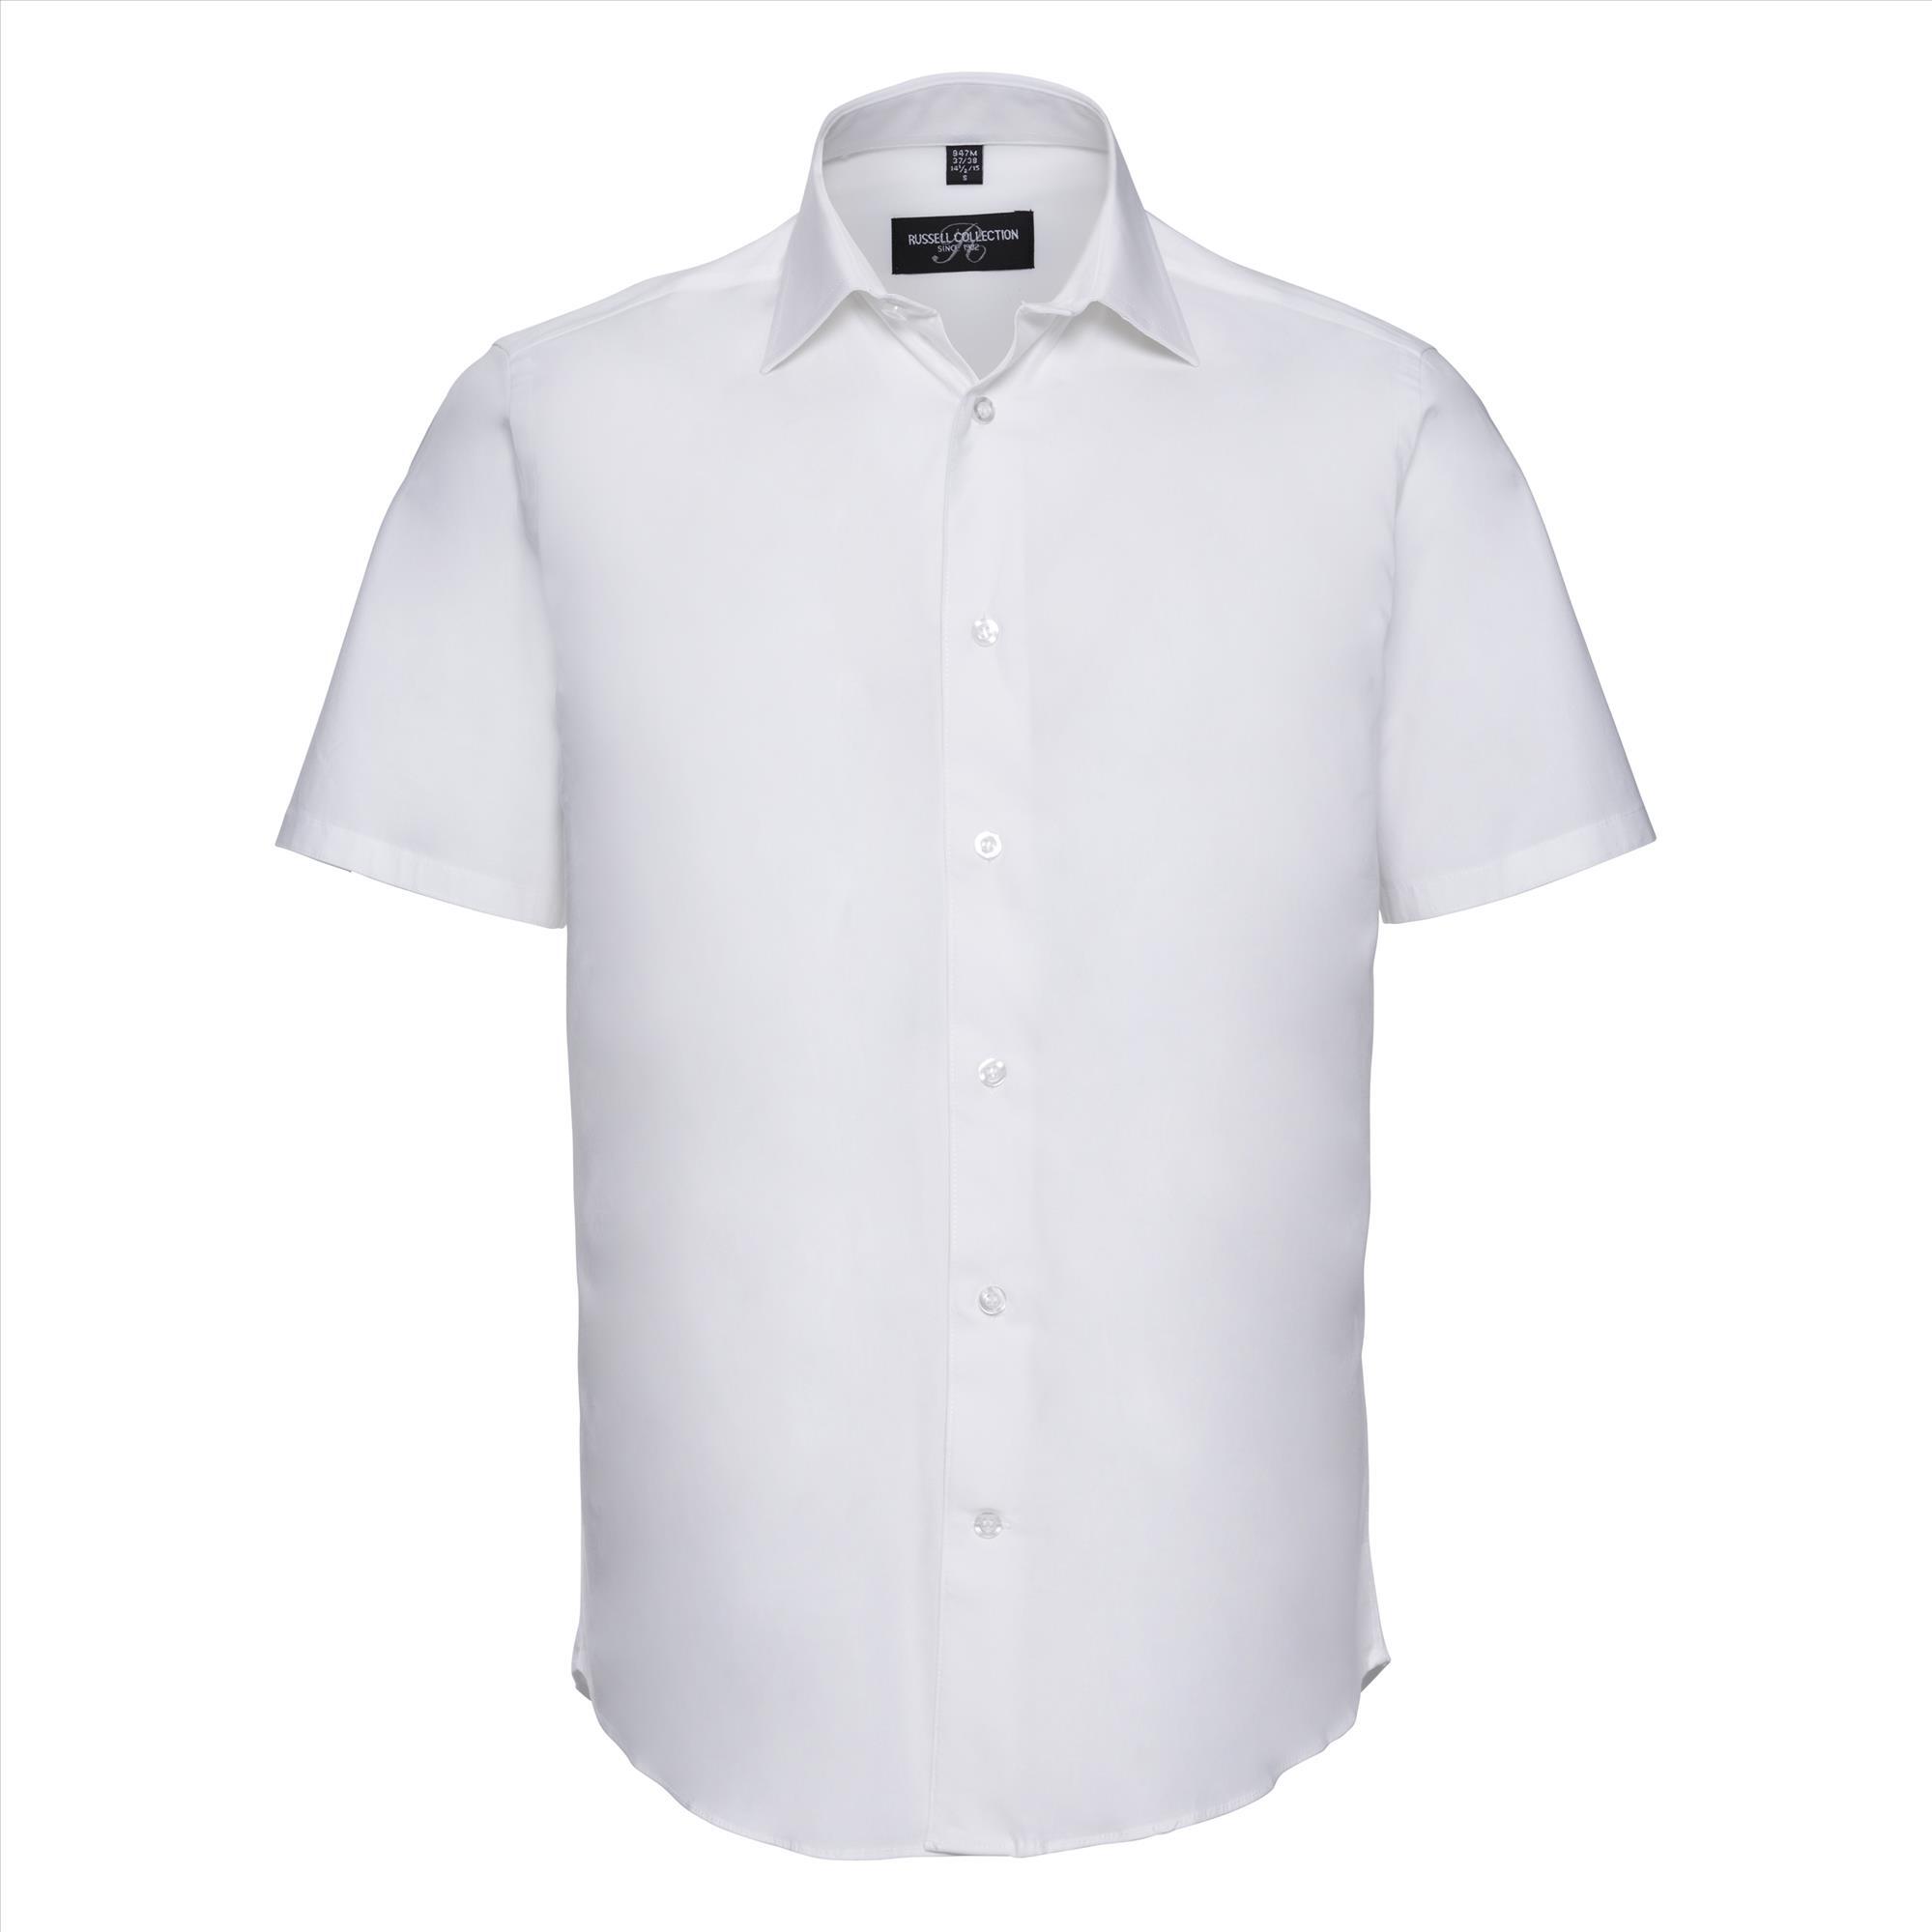 Getailleerd heren overhemd wit te personaliseren te bedrukken bedrijfslogo